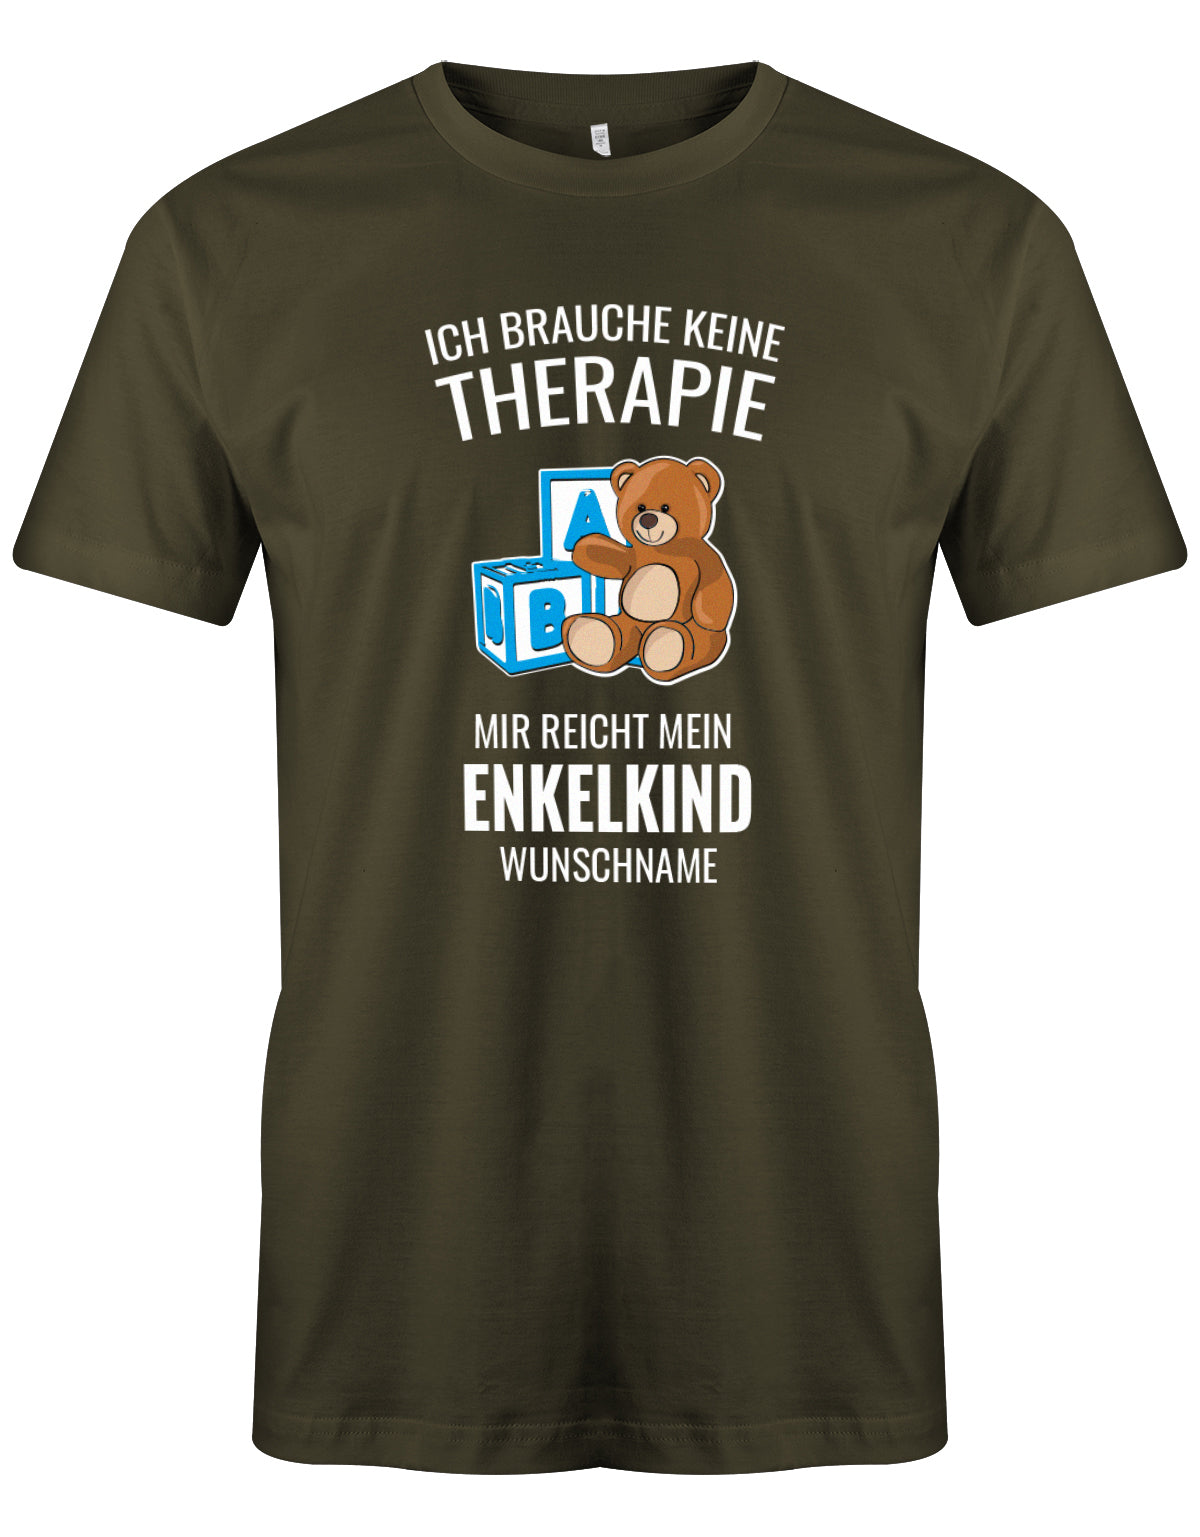 Opa Shirt personalisiert - Ich brauche keine Therapie, mir reicht mein Enkelkind. Mit Namen vom Enkelkind. Army